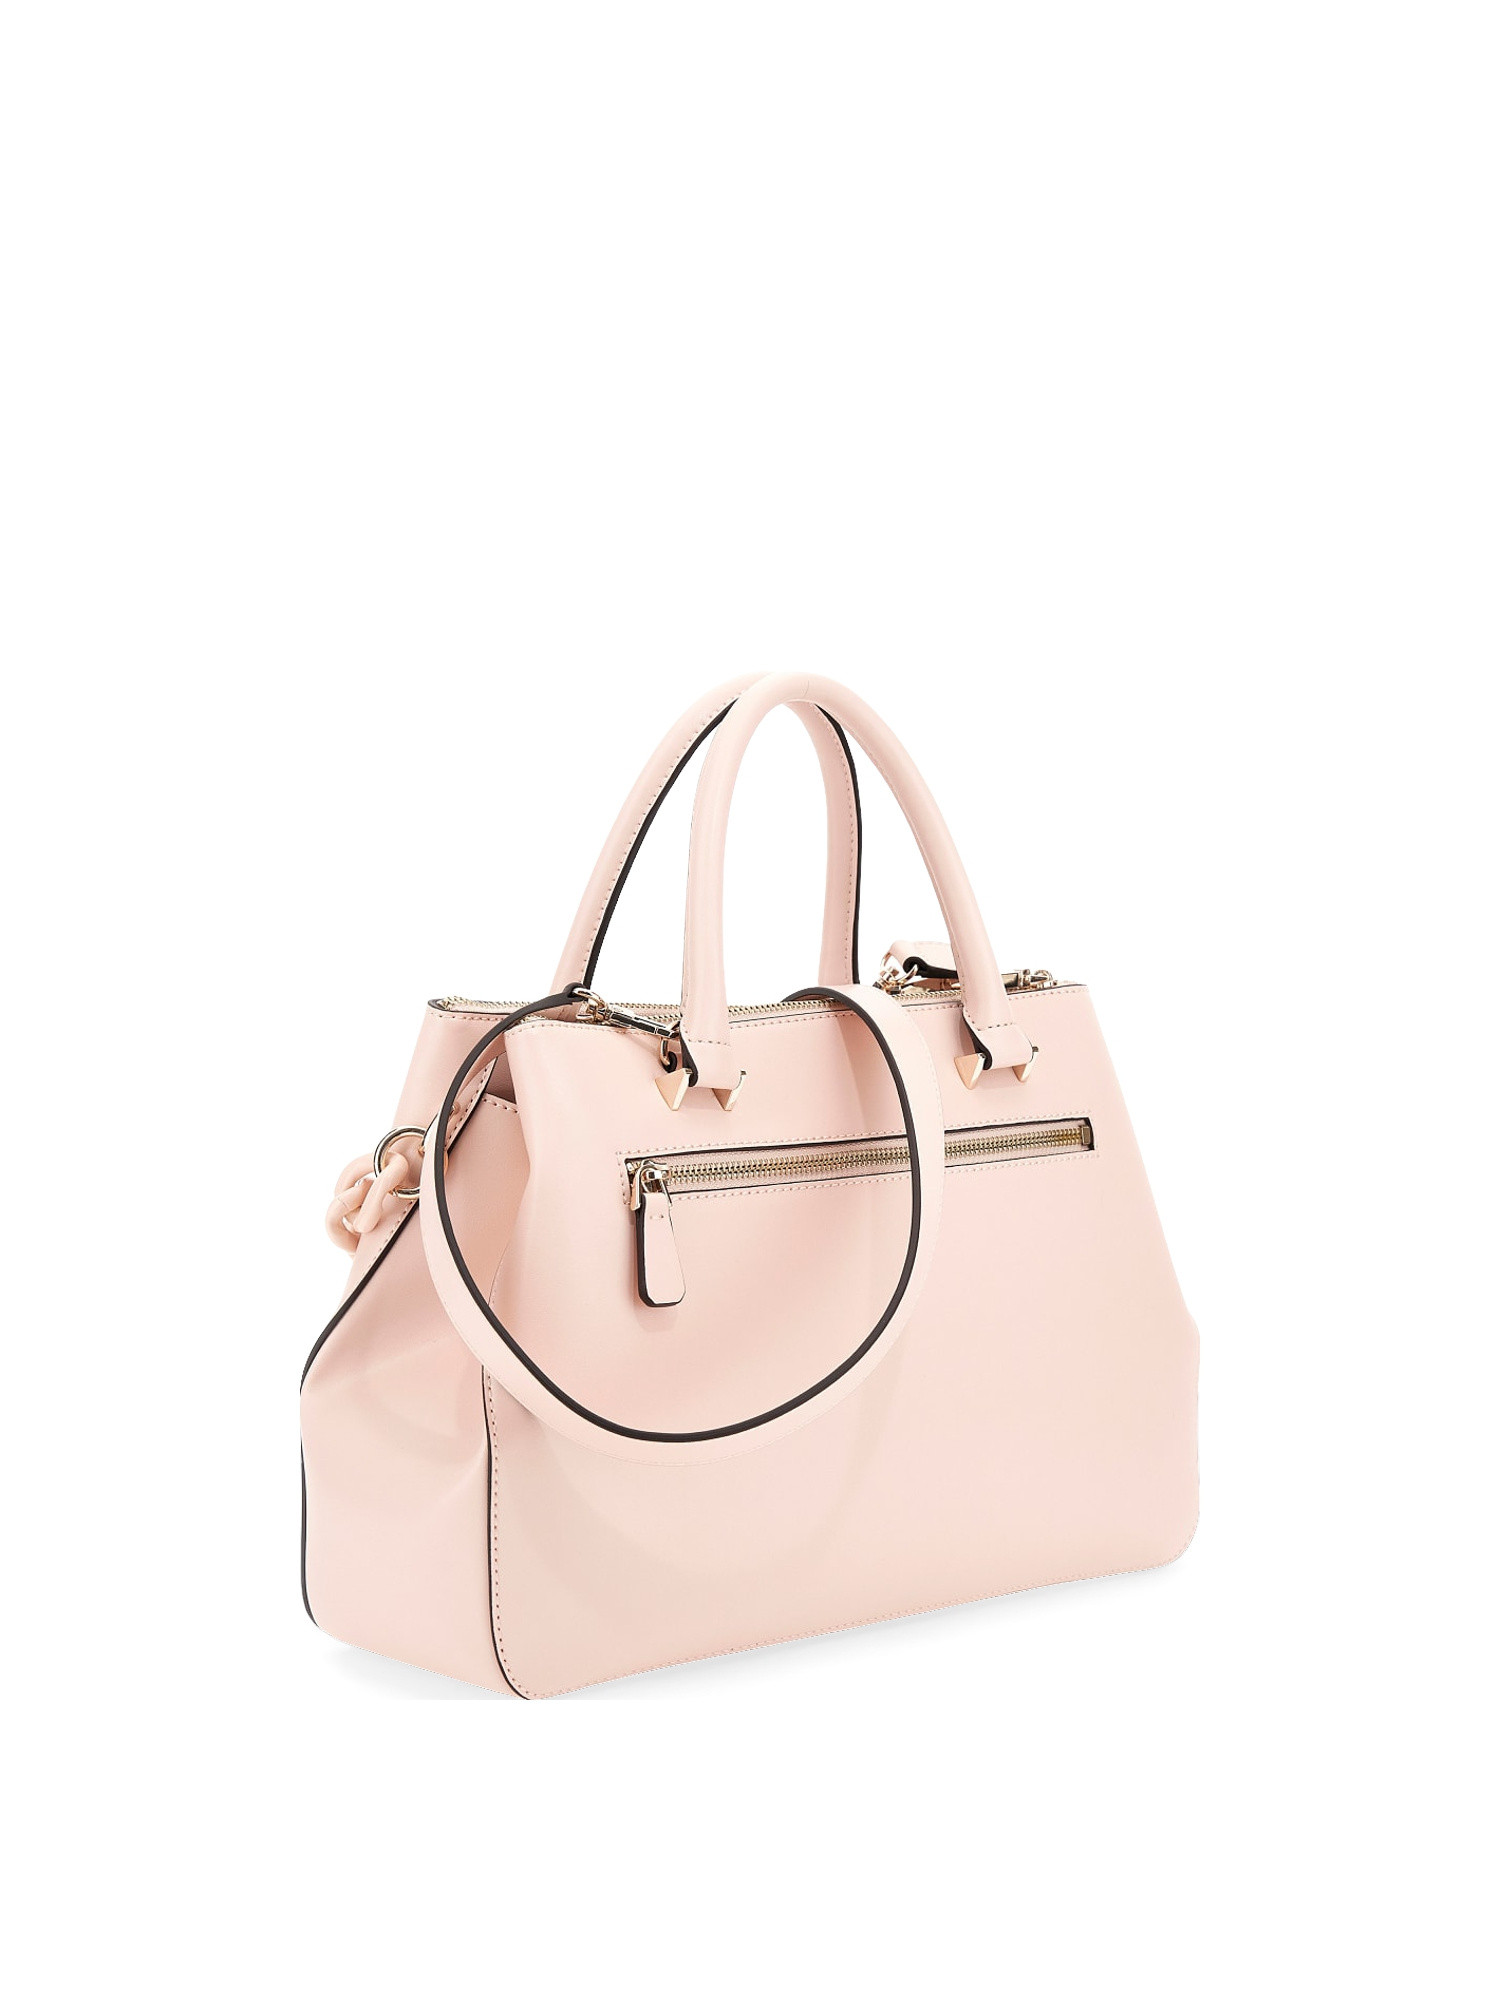 Guess - Corina handbag, Light Pink, large image number 1